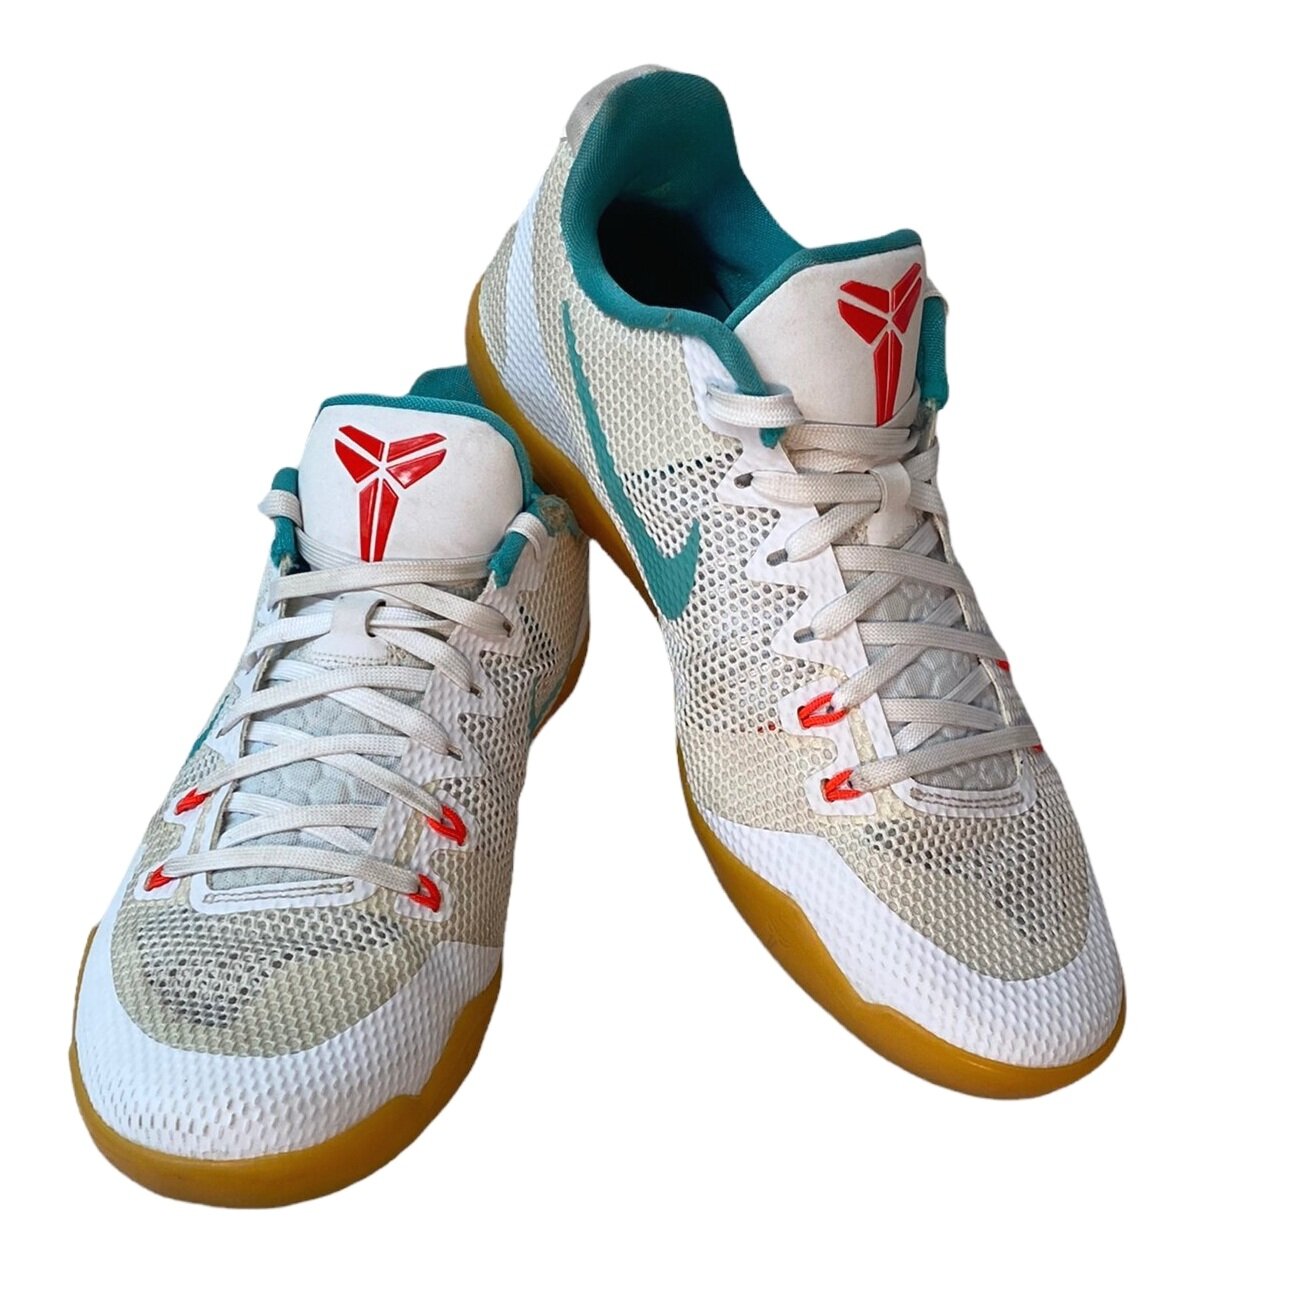 Nike Kobe 11 EM 'Summer' Sneakers, Men's Size 10 — Mercer Island Thrift Shop